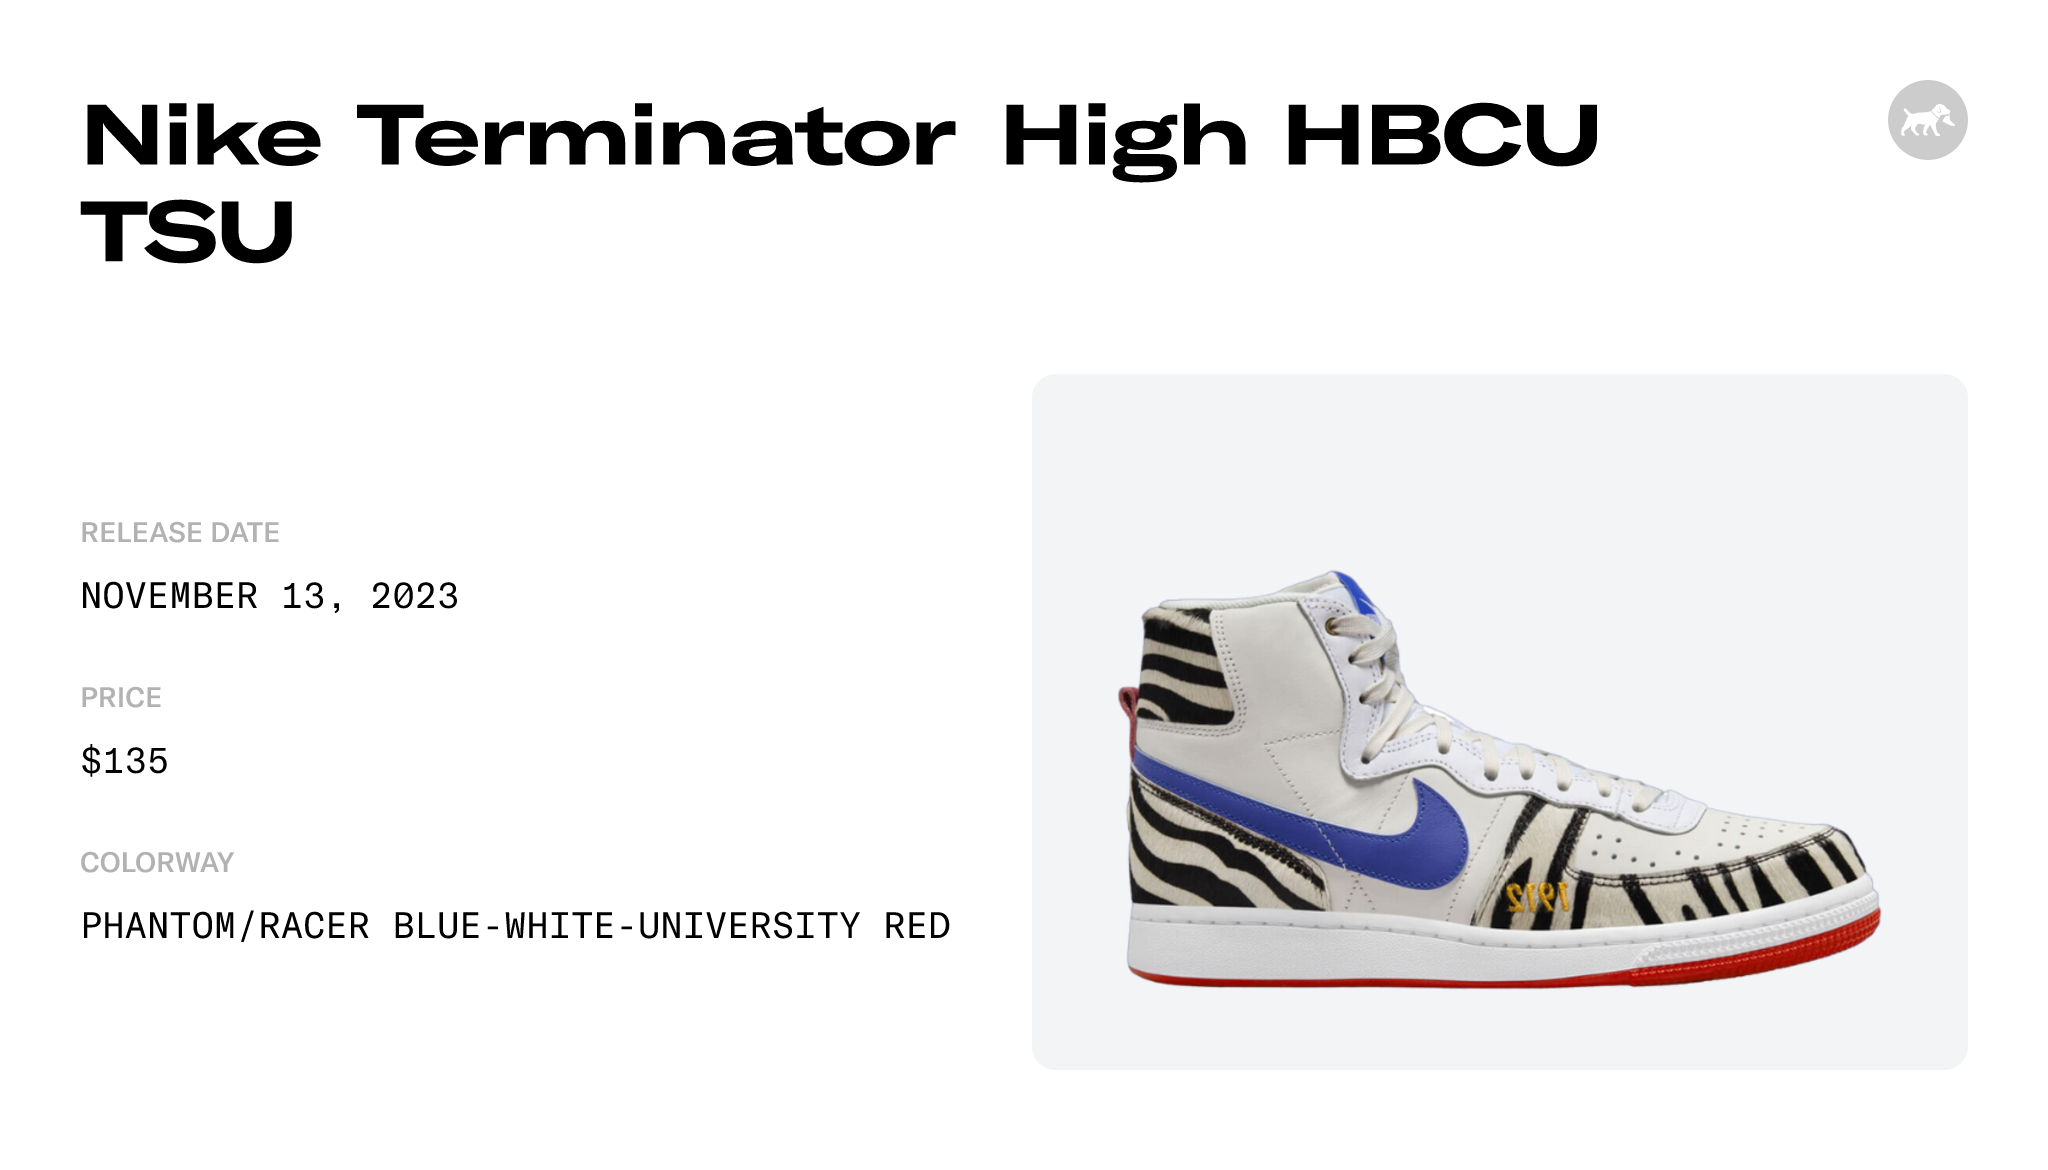 Nike Terminator High HBCU TSU - FV2047-001 Raffles and Release Date